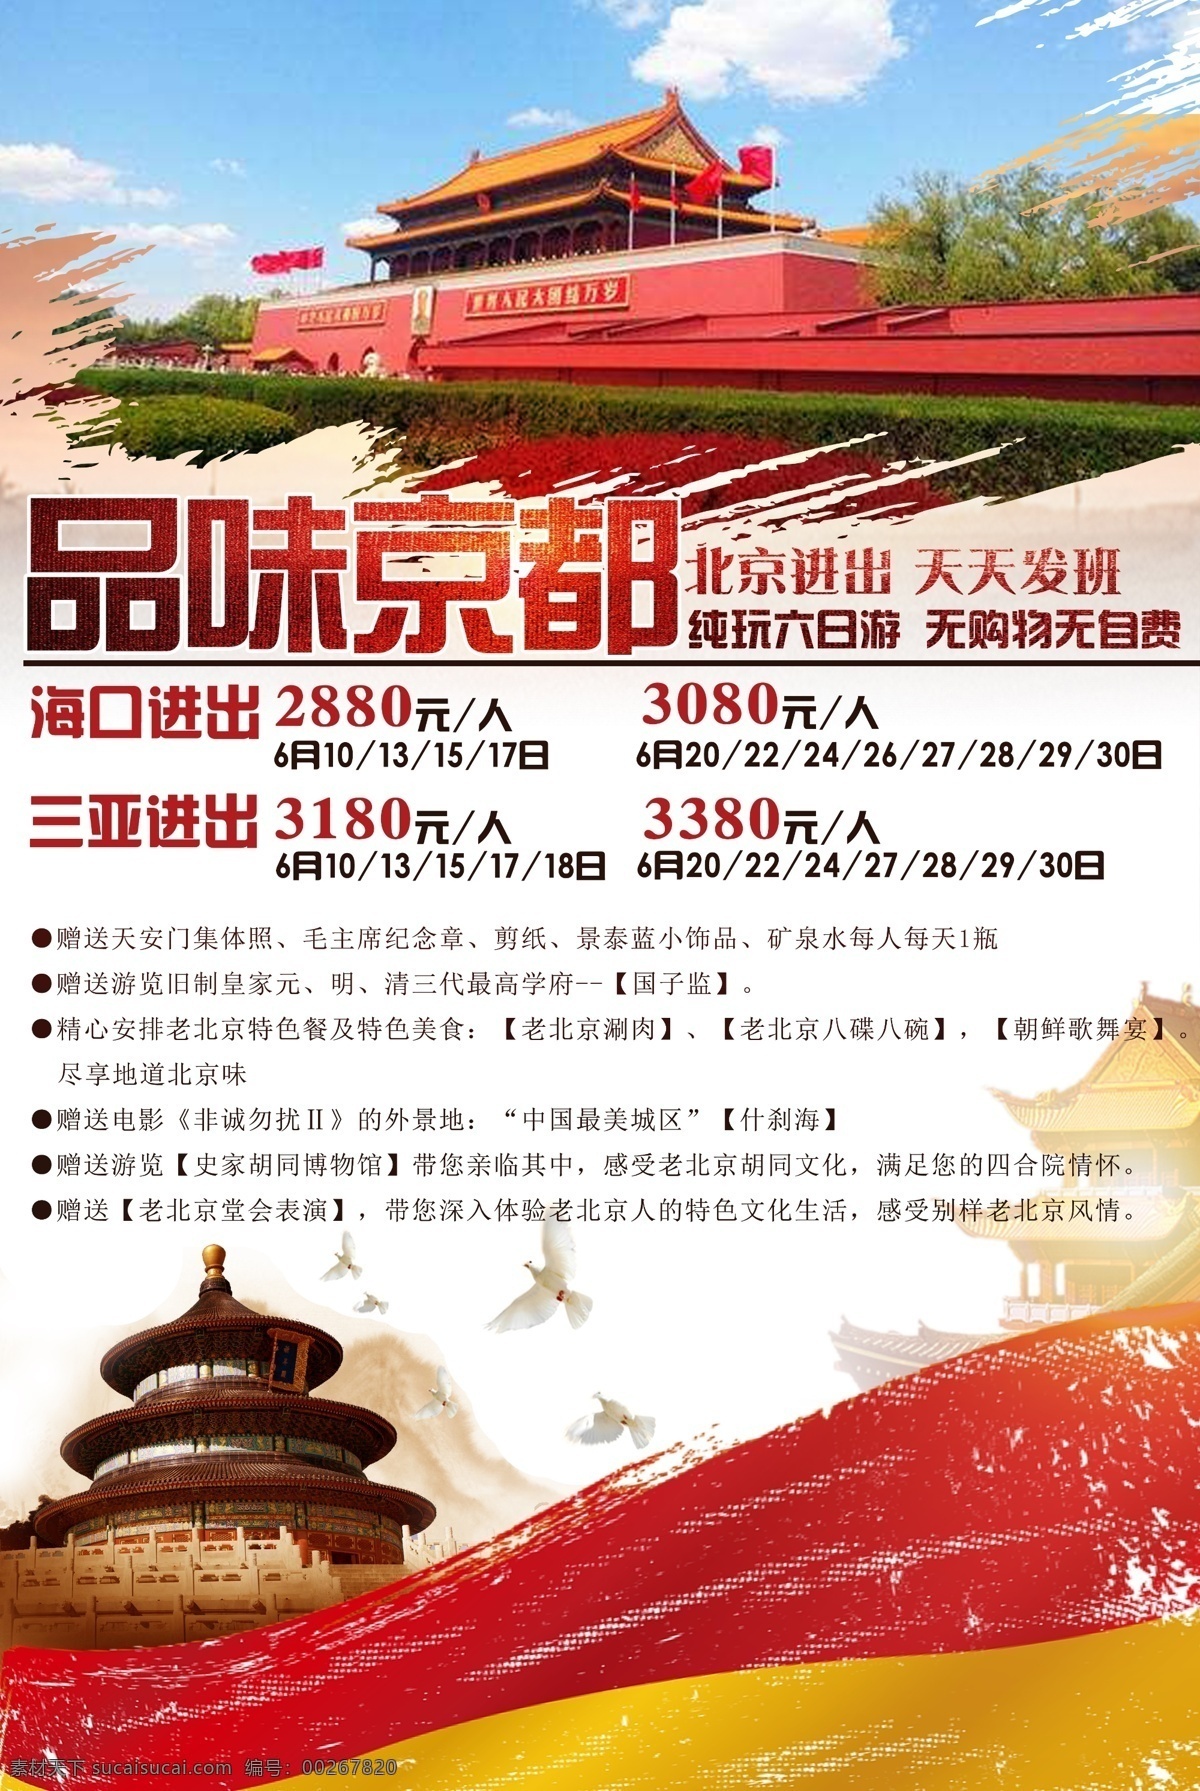 品味 京都 旅游 海报 北京 天津 故宫 天安门 天坛